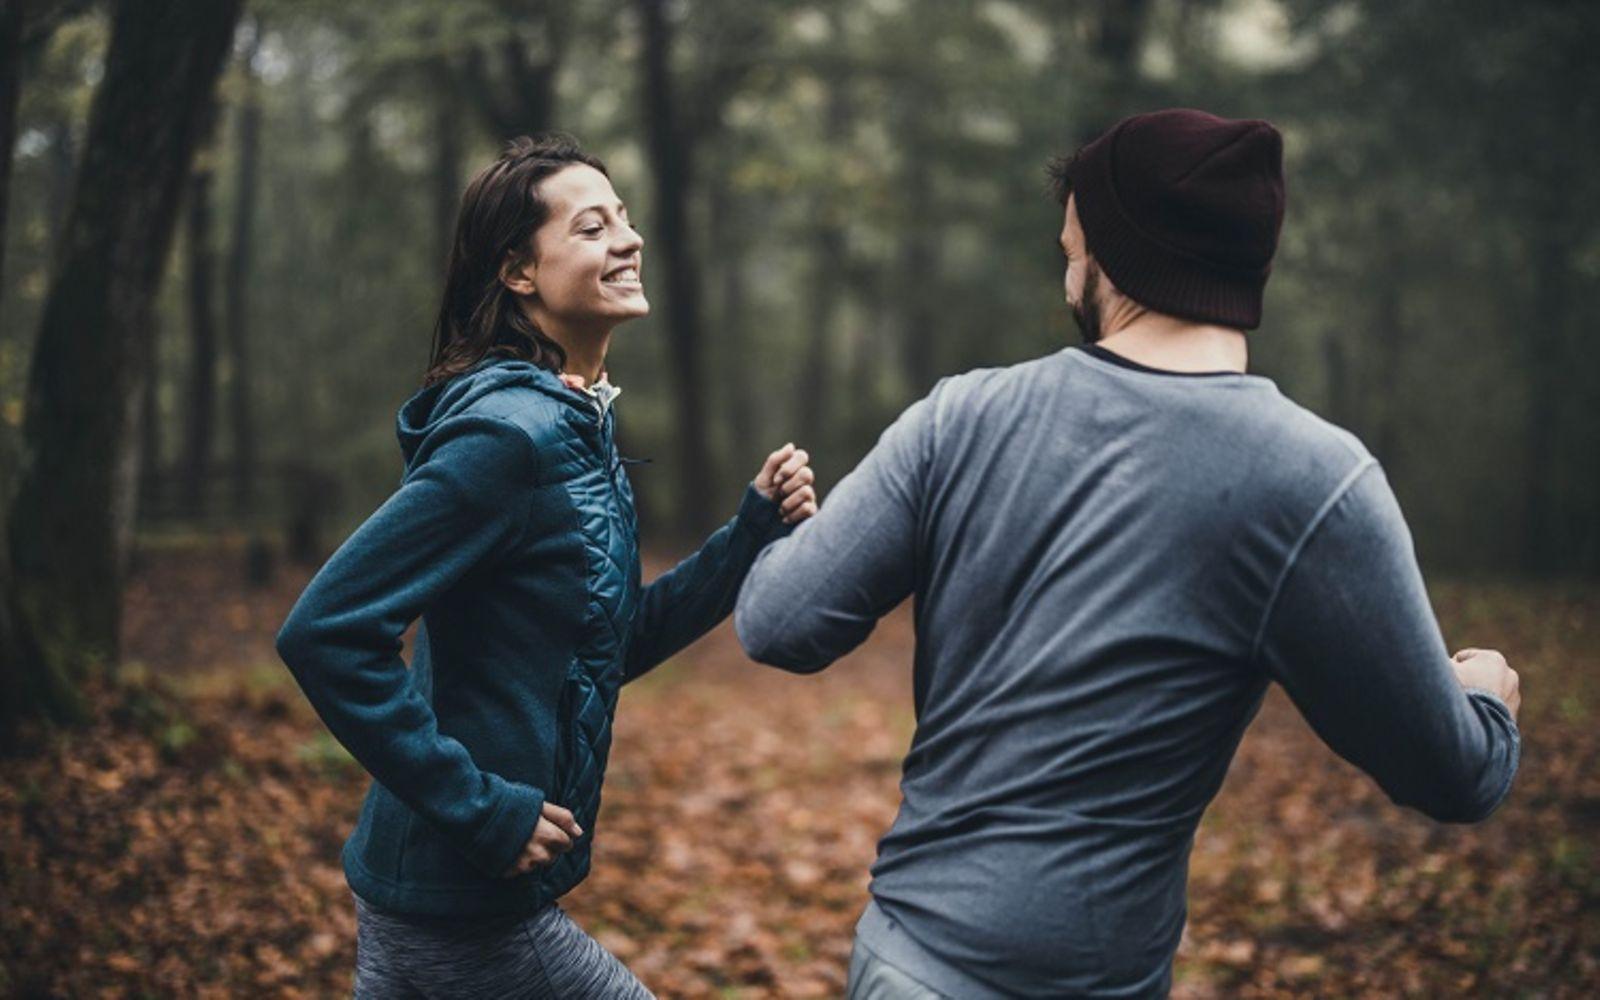 Bild: Onlineseminar Stressbewältigung durch Bewegung: Mann und Frau laufen im Wald.